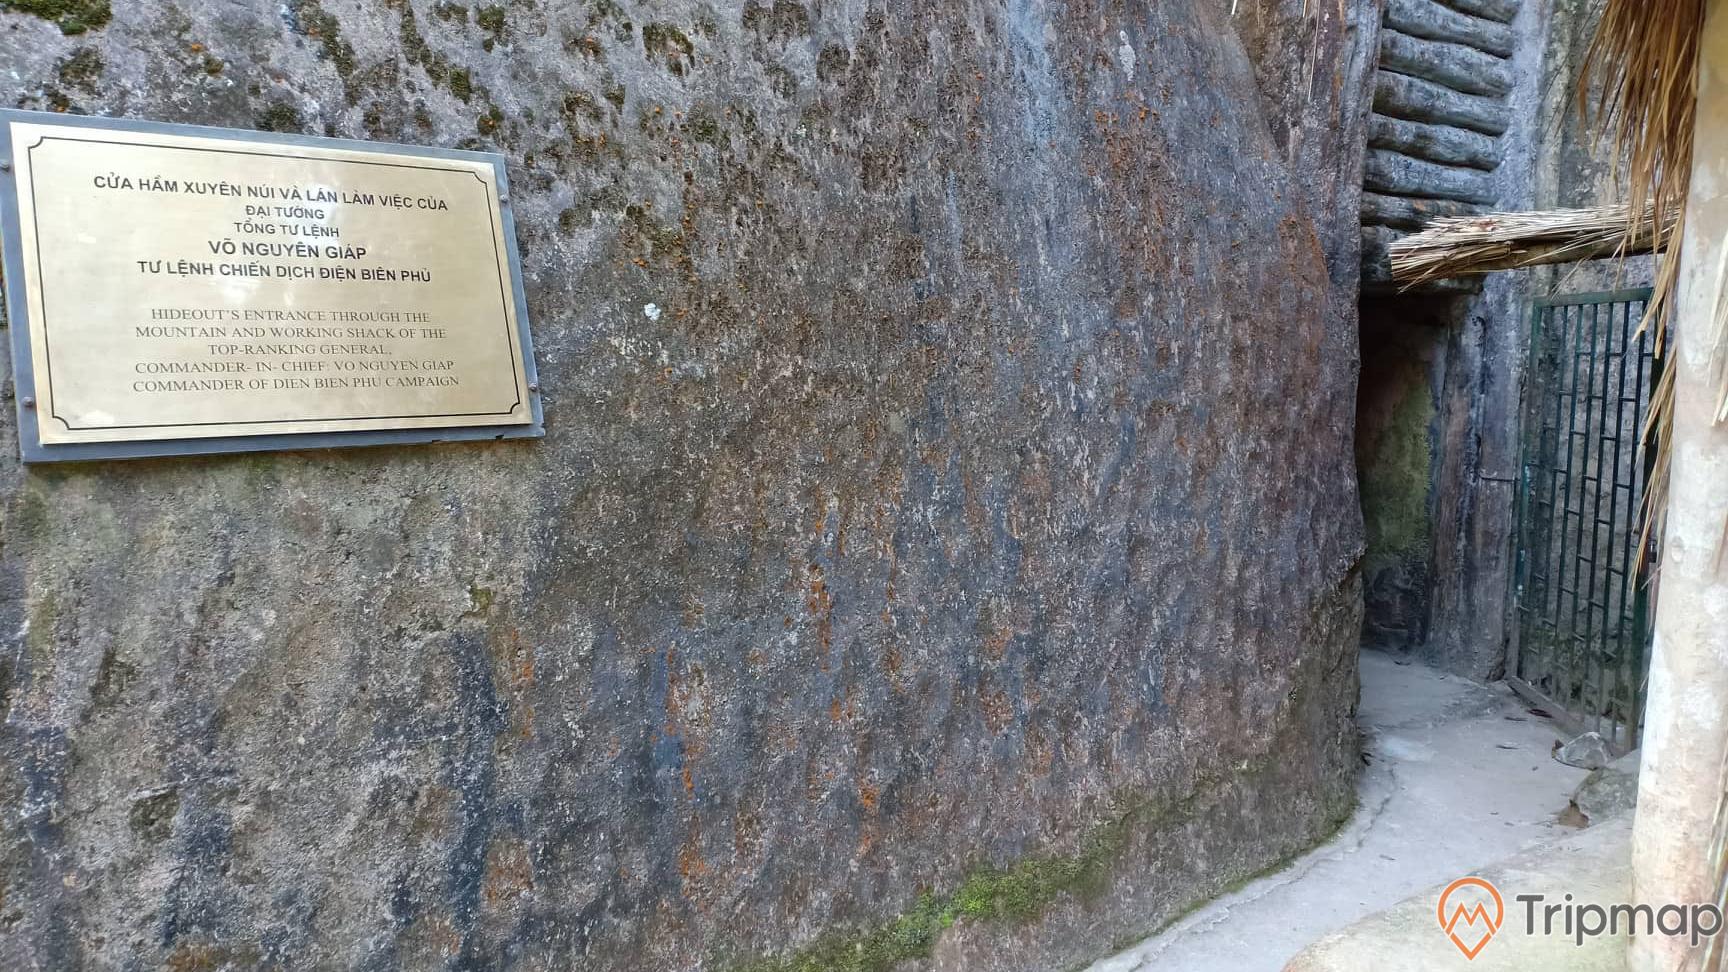 hầm xuyên núi và lán làm việc của đại tướng tổng tư lệnh Võ Nguyên Giáp tại sở chỉ huy chiến dịch Điện Biên Phủ, tấm bảng thông tin nơi địa điểm, ảnh chụp trước cửa hầm